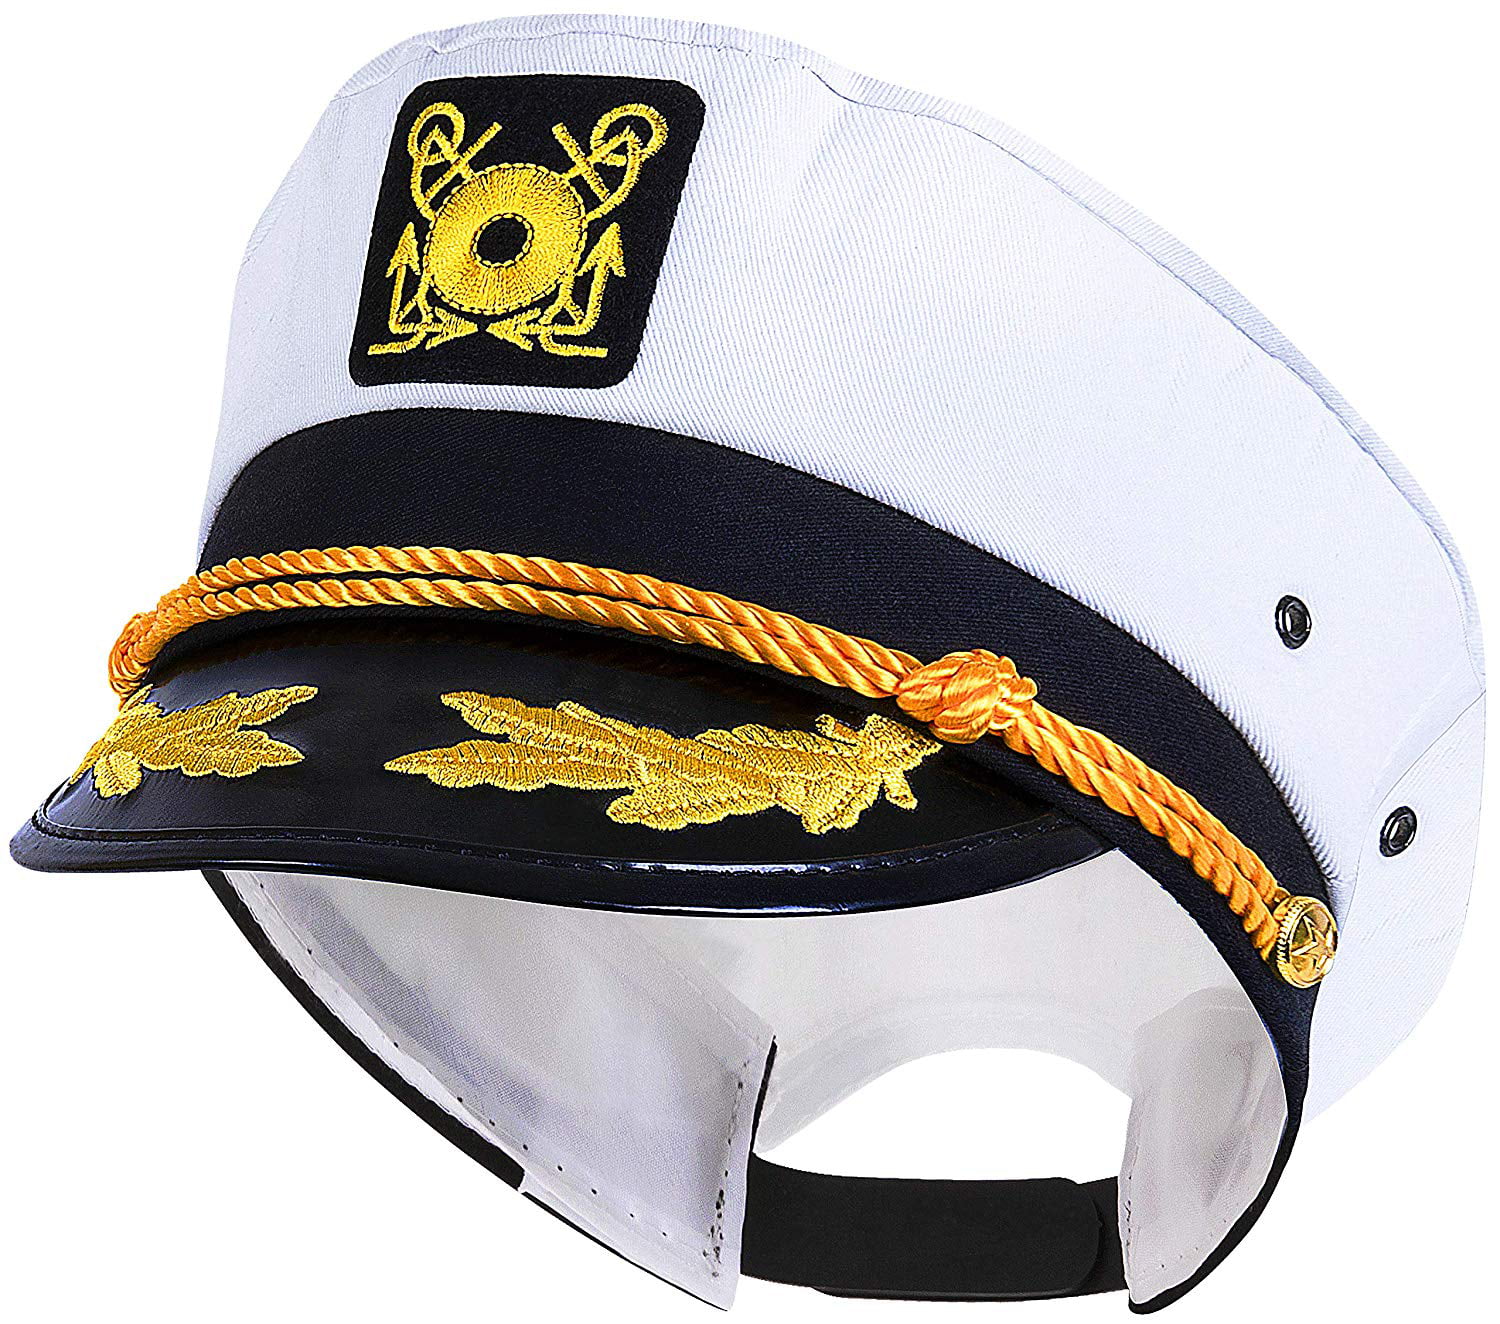 yacht captain hat for sale